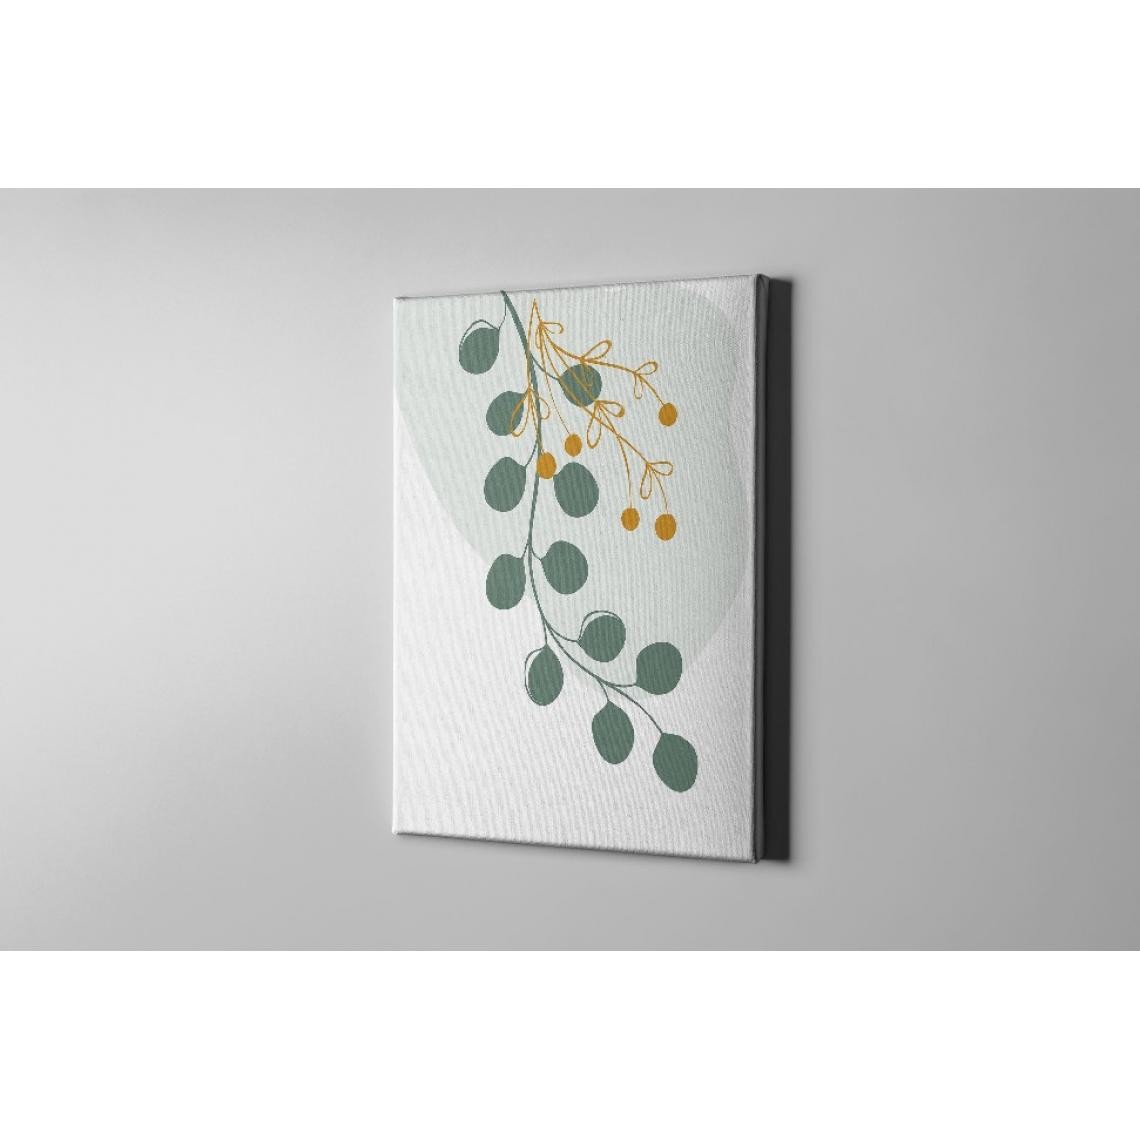 Homemania - HOMEMANIA Tableau sur toile Feuille - Vert, blanc, jaune - 100 x 3 x 150 cm - Tableaux, peintures